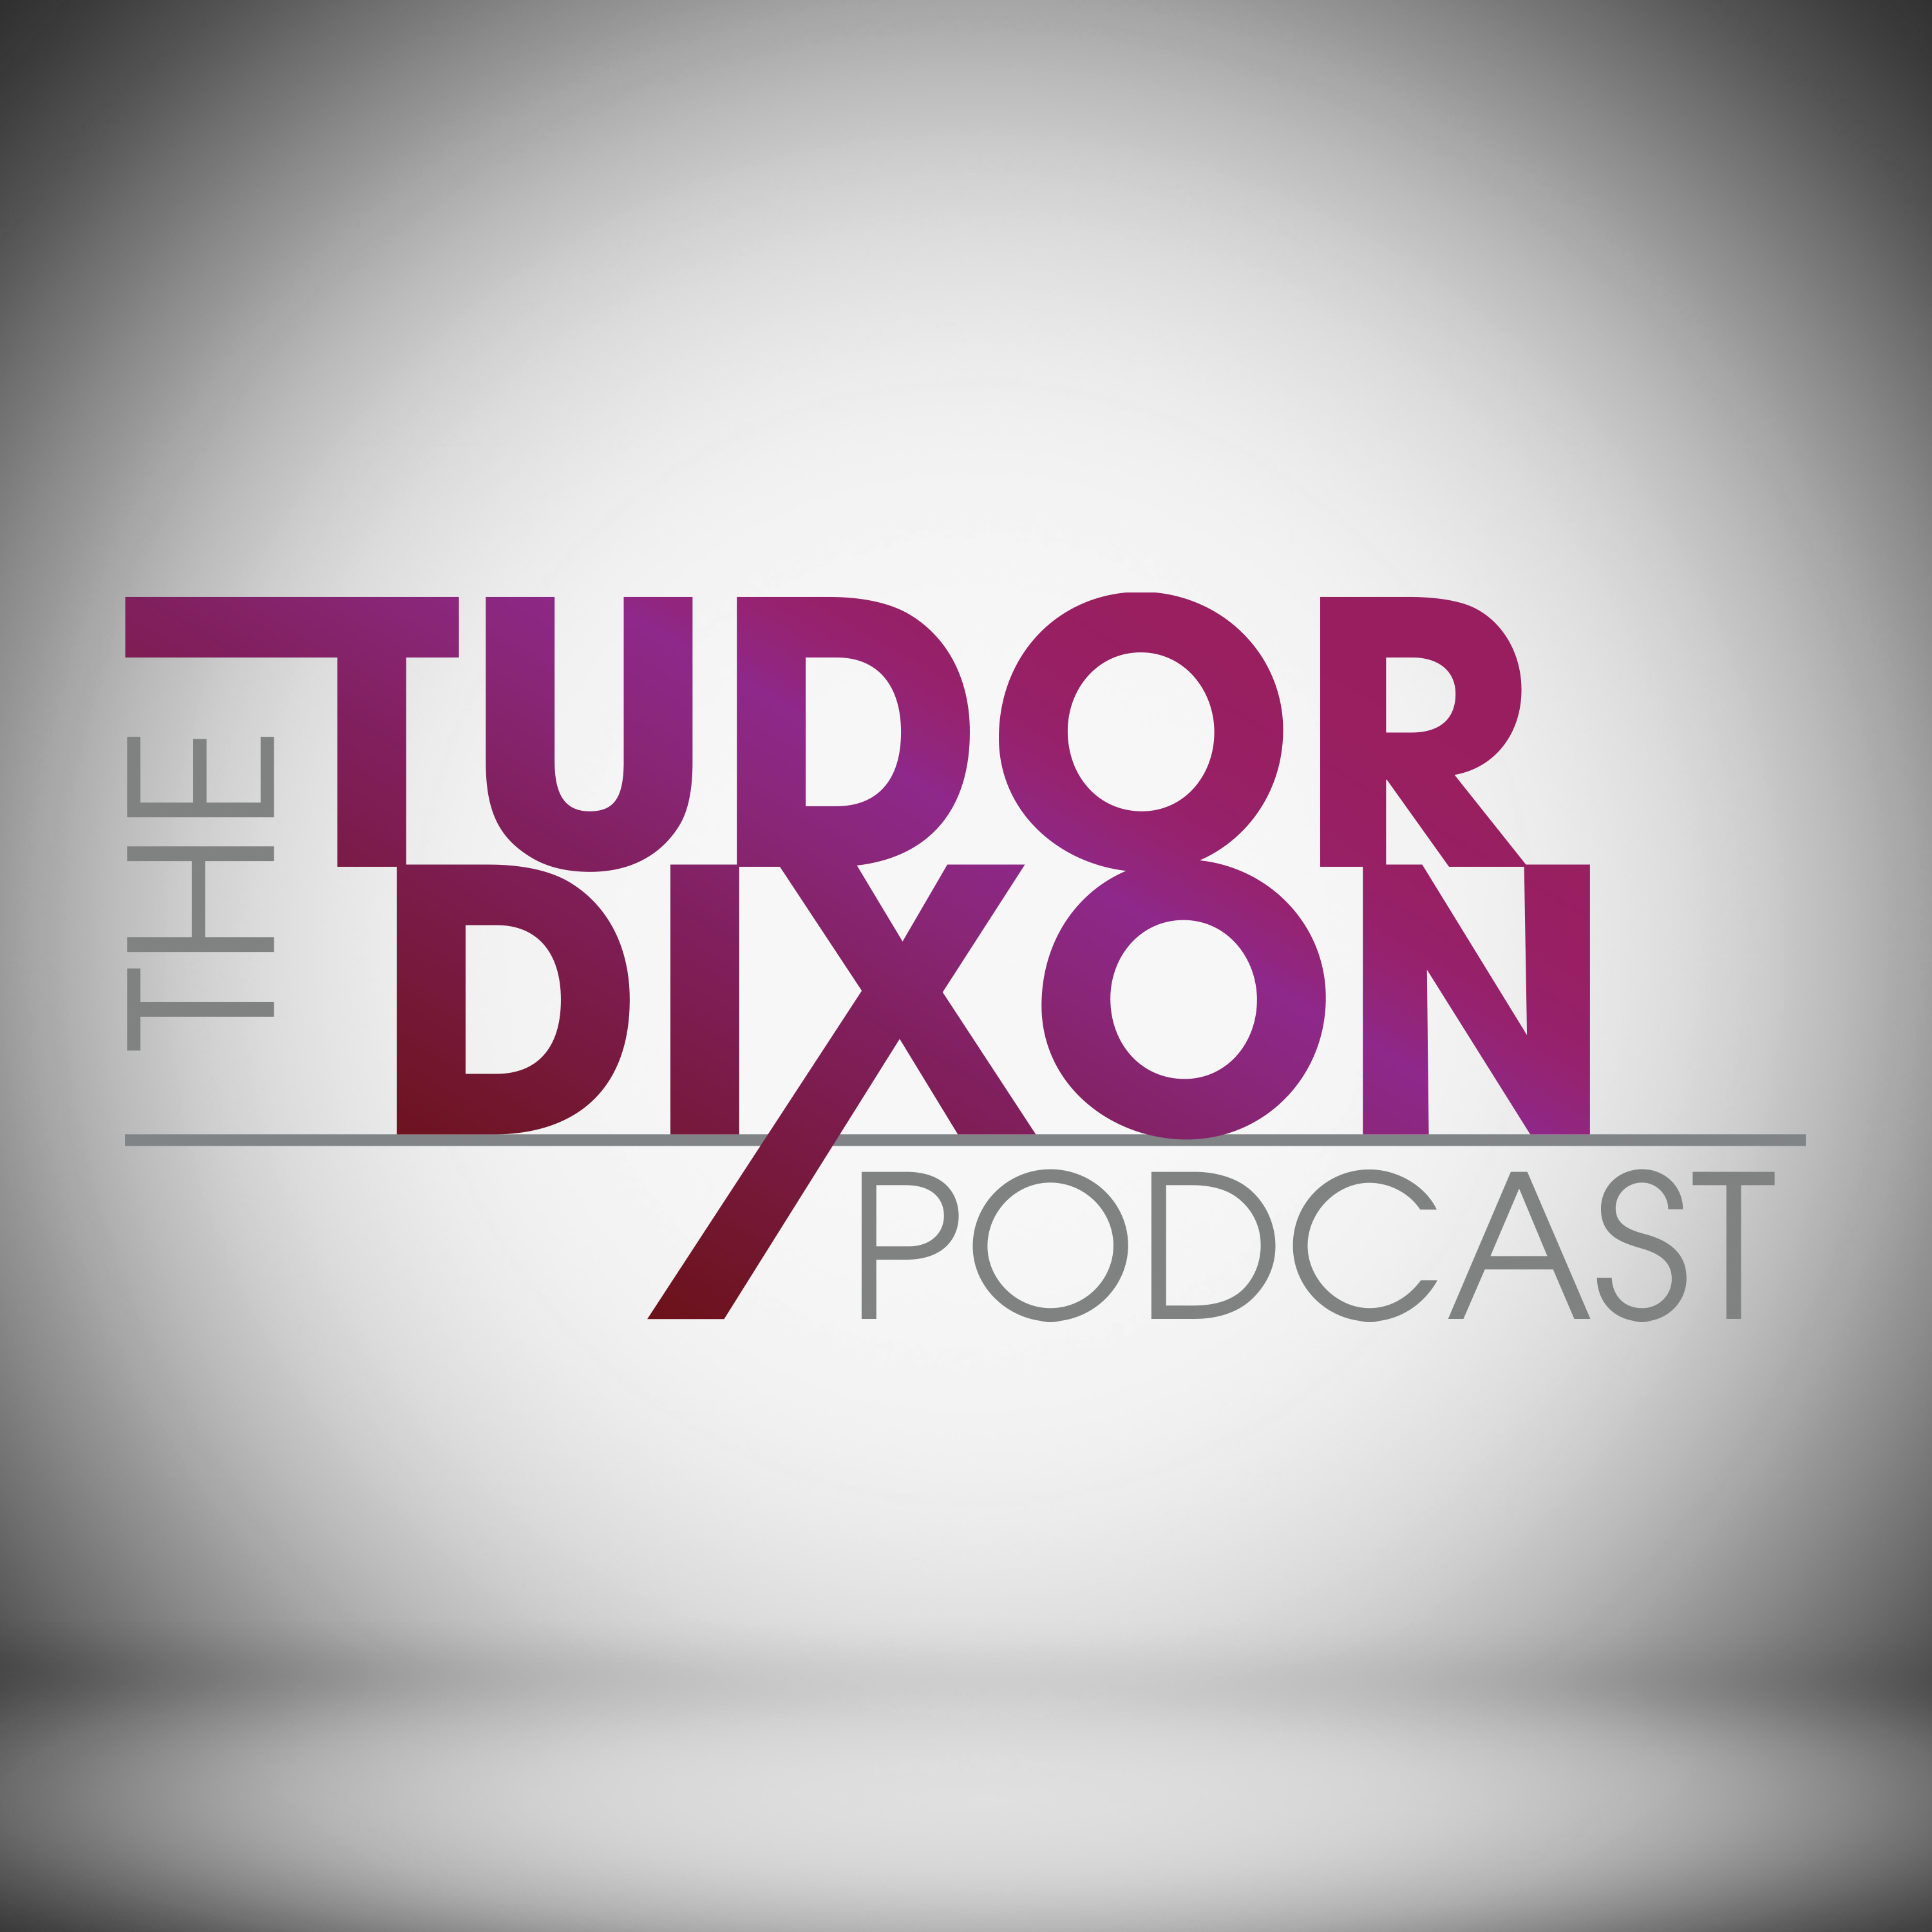 The Tudor Dixon Podcast: The Failure of Democratic Propaganda